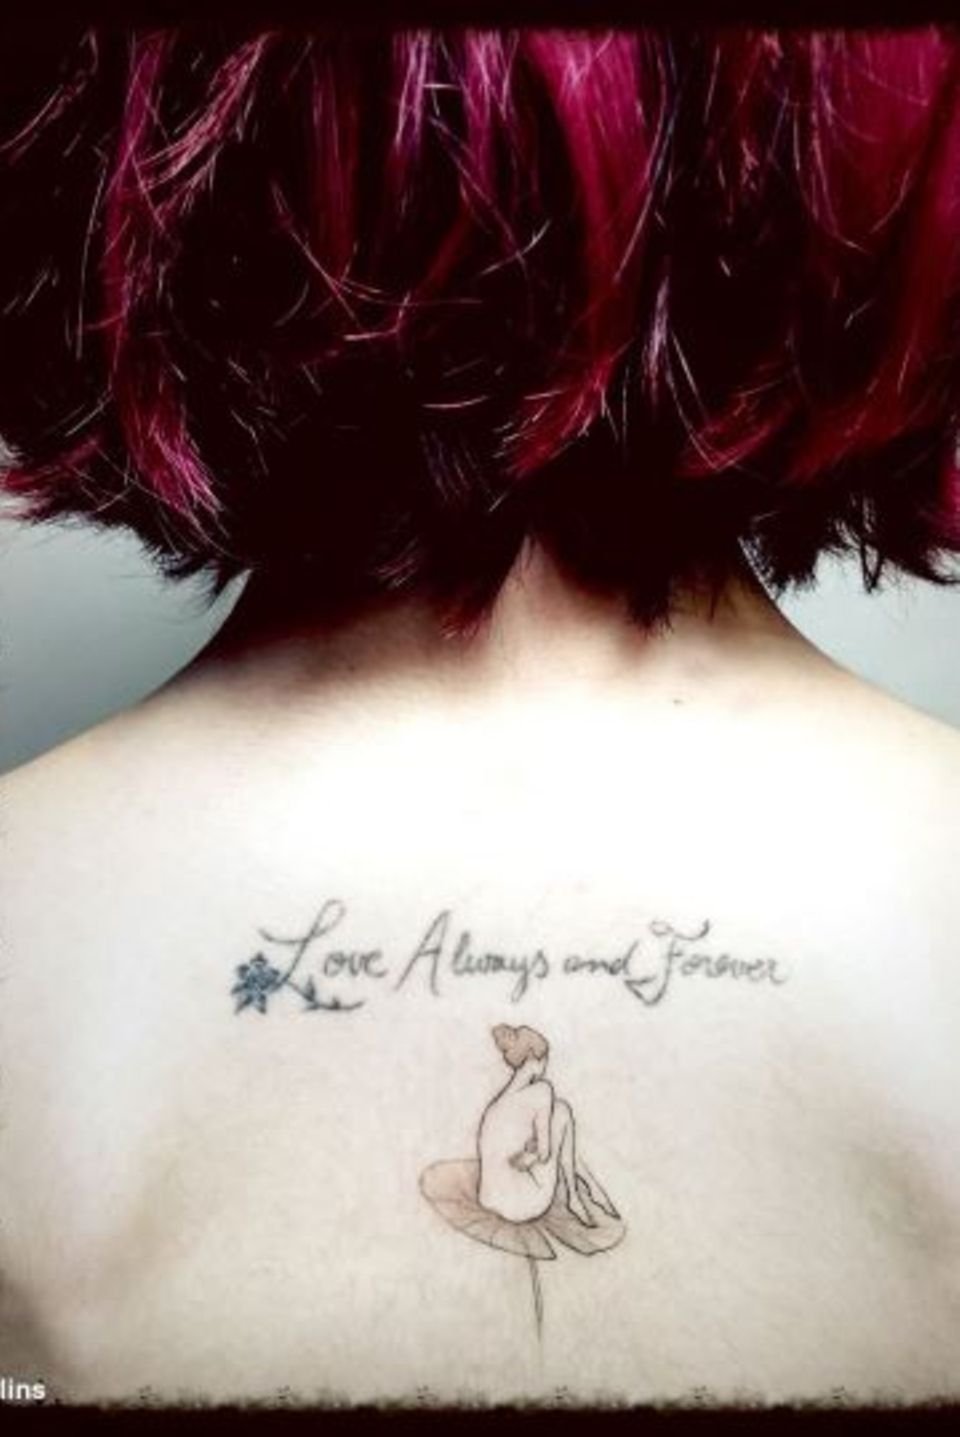 Ein zartes Tattoo für ein zartes Mädchen: Lily Collins ließ sich dieses Kunstwerk von einem koreanischen Tattoo-Künstler stechen. "Liebe für immer und ewig", ziert jetzt ihren Rücken, mitsamt einer nackten Frau, die auf einer Wasserlilie sitzt.